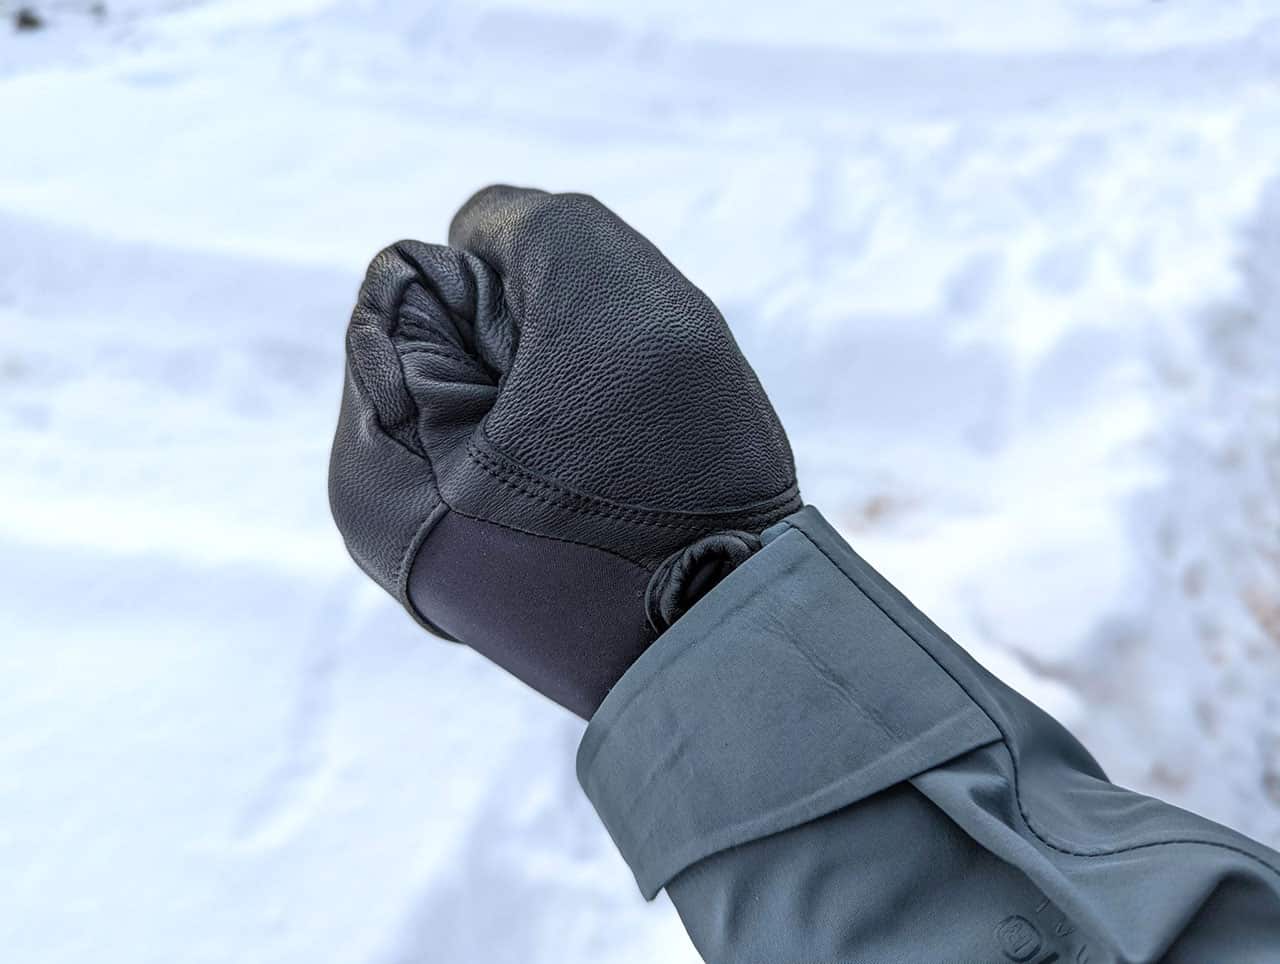 Sealskinz waterproof gloves in a fist